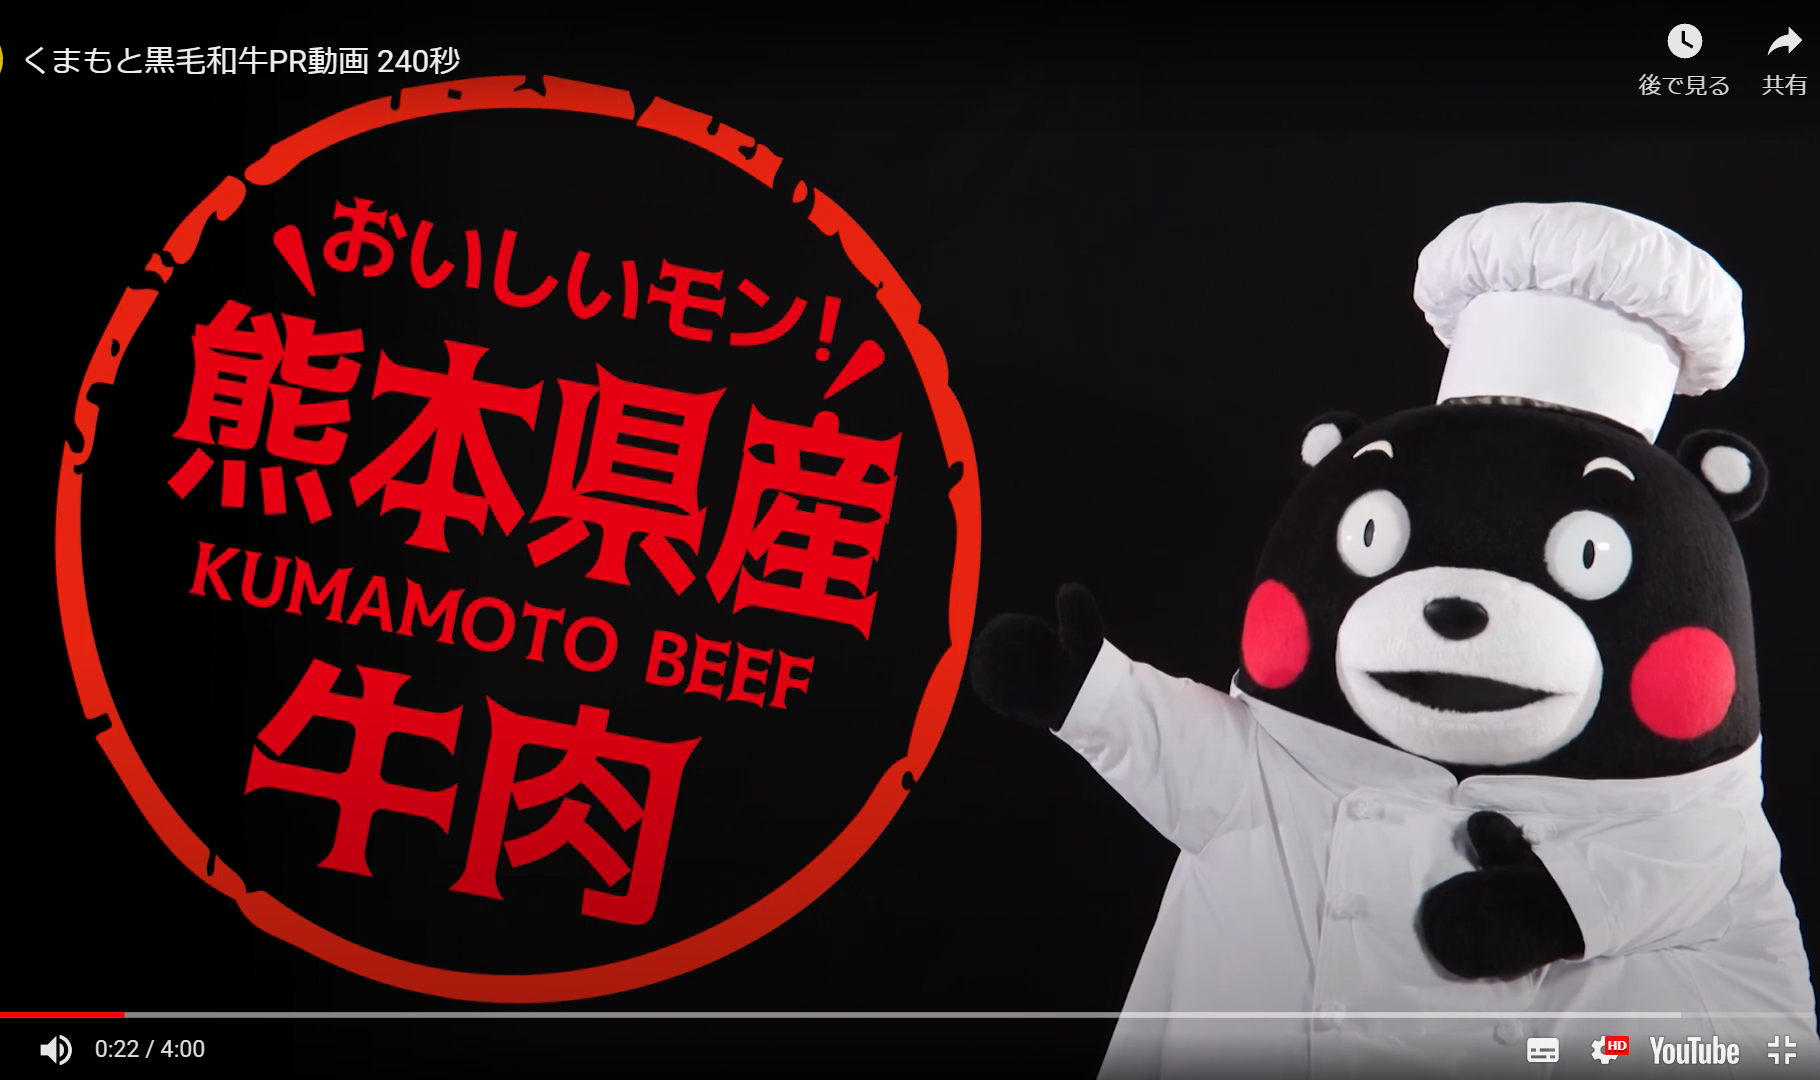 協熊本県産牛肉消費拡大推進協議会のYouTubeチャンネル